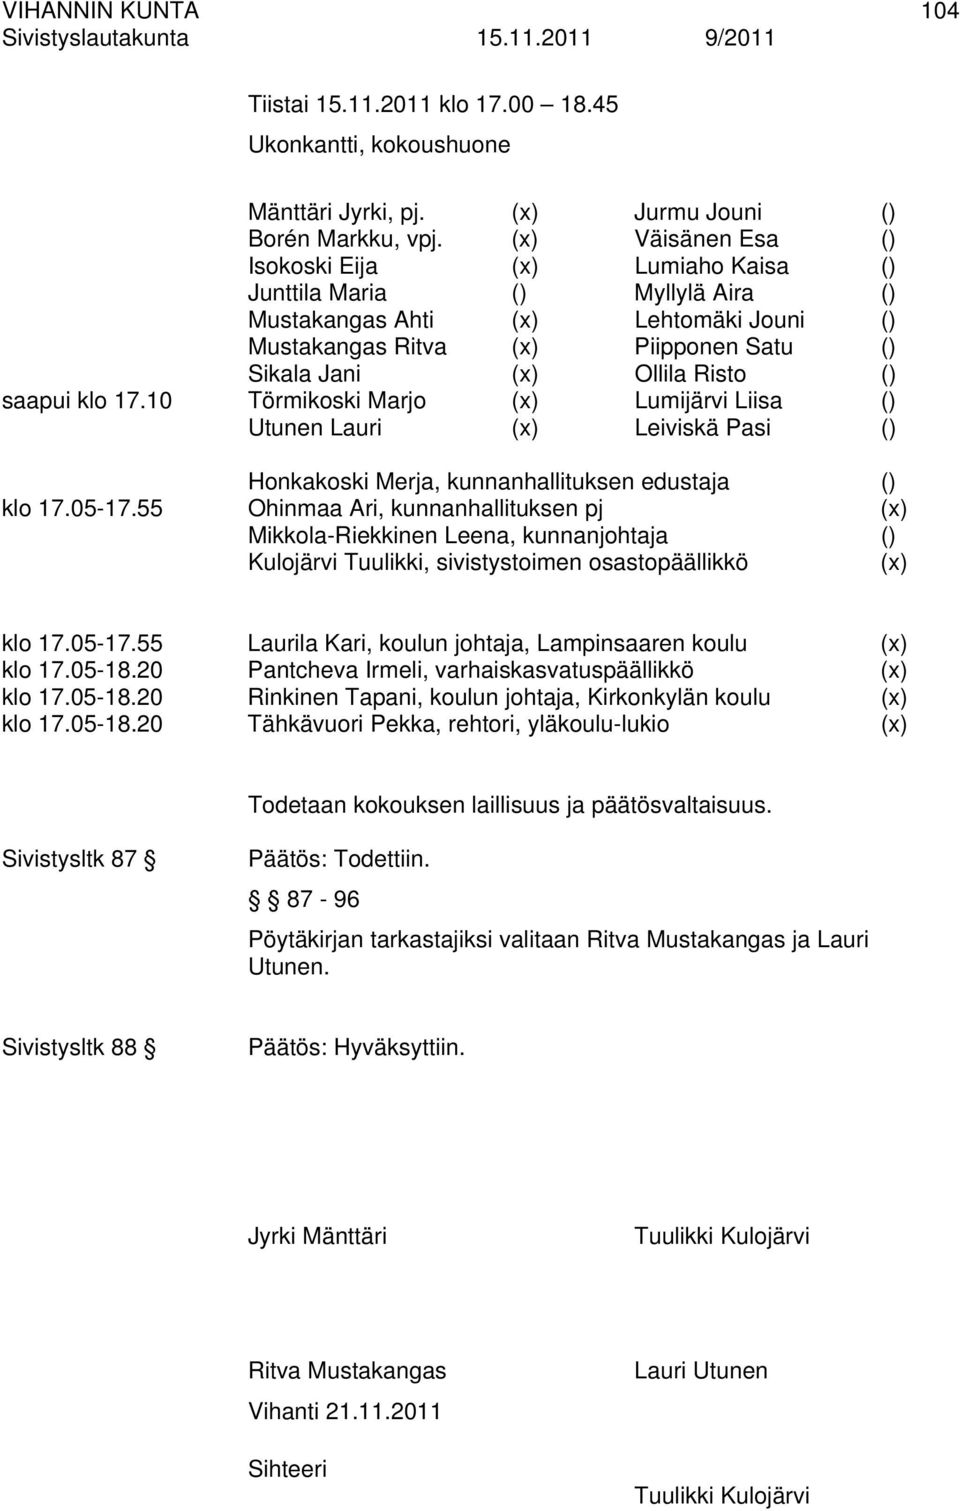 () saapui klo 17.10 Törmikoski Marjo (x) Lumijärvi Liisa () Utunen Lauri (x) Leiviskä Pasi () Honkakoski Merja, kunnanhallituksen edustaja () klo 17.05-17.